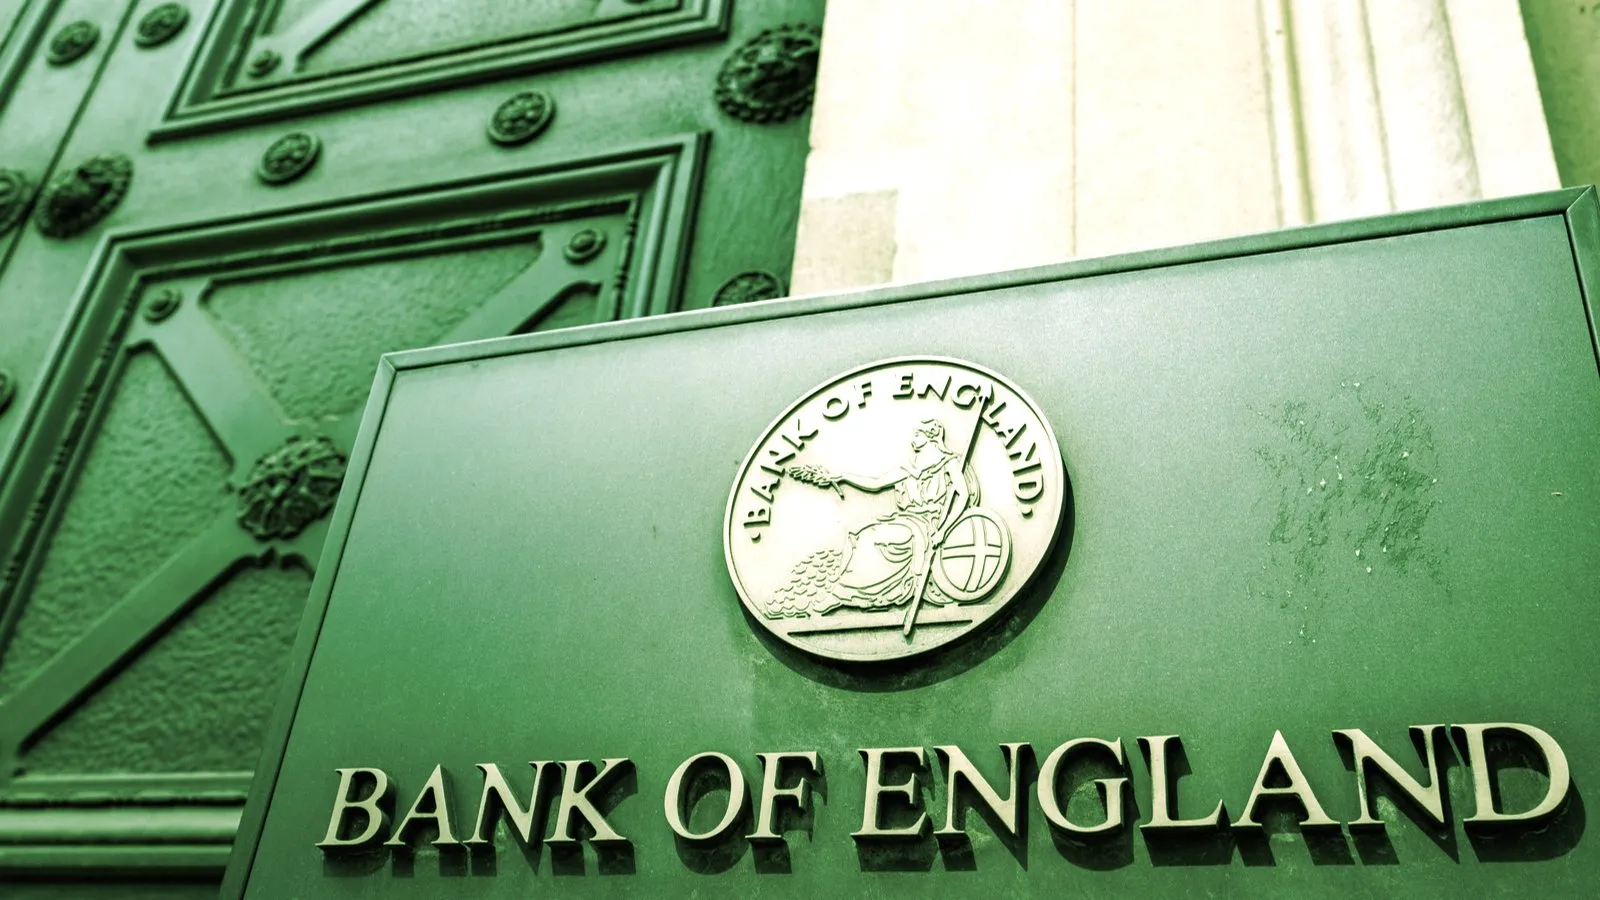 El Banco de Inglaterra es el banco central del Reino Unido. Imagen: Shutterstock